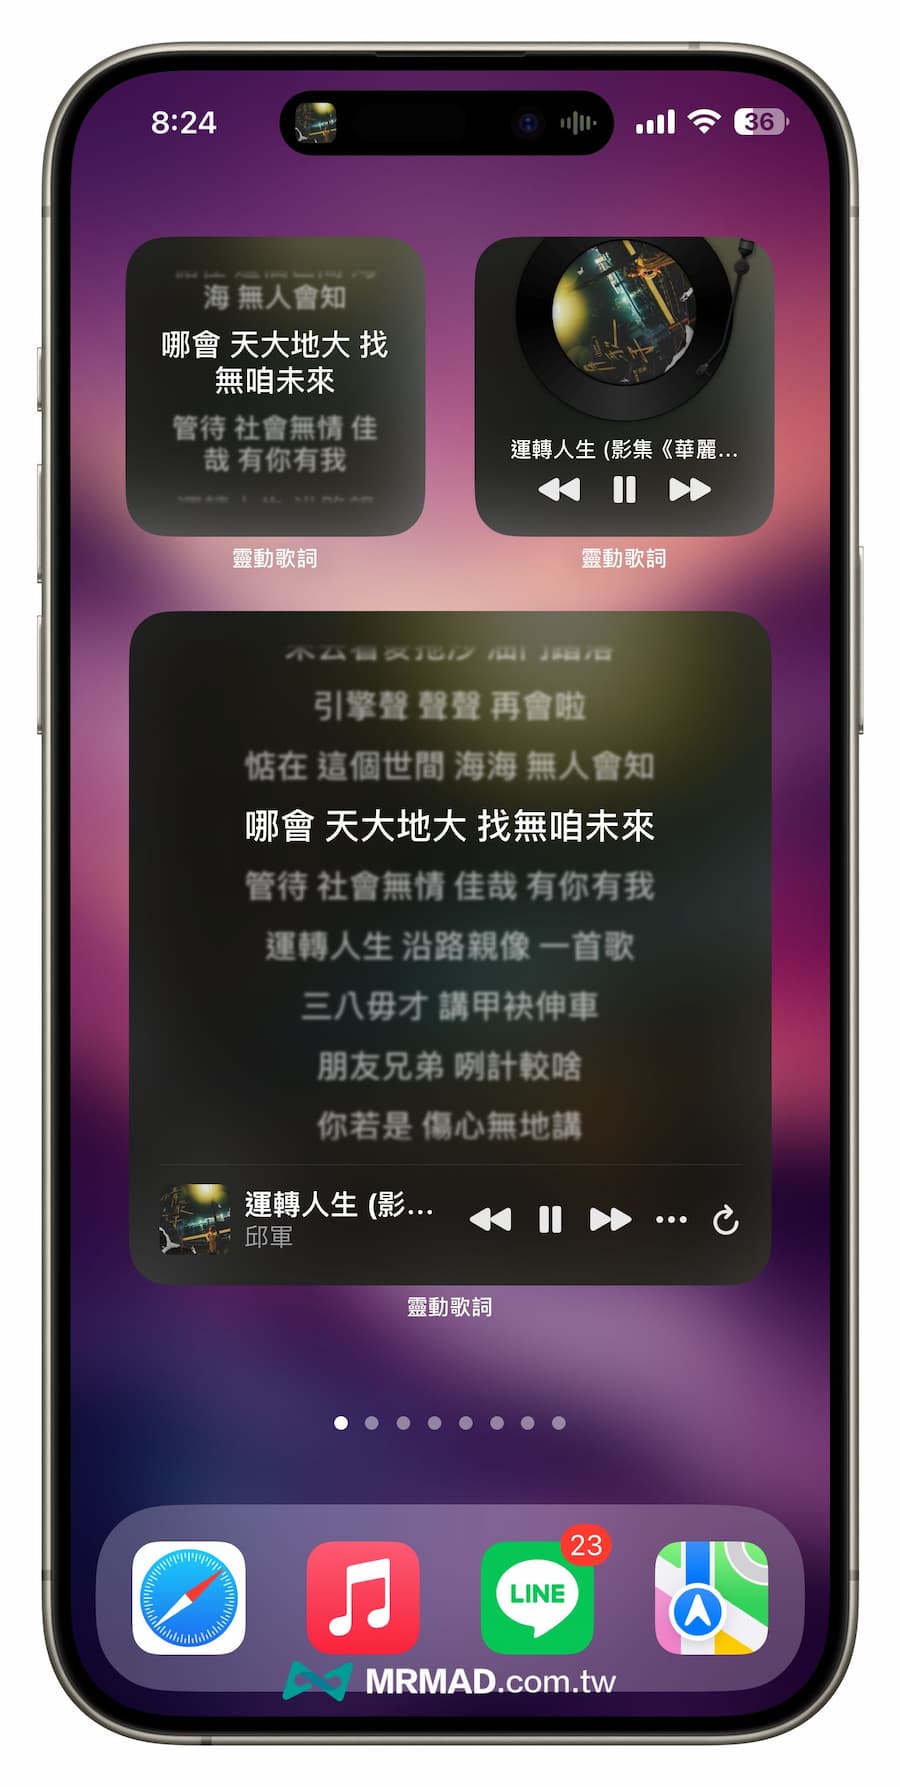 《靈動歌詞》iOS 動態歌詞 App 完全上手技巧 5